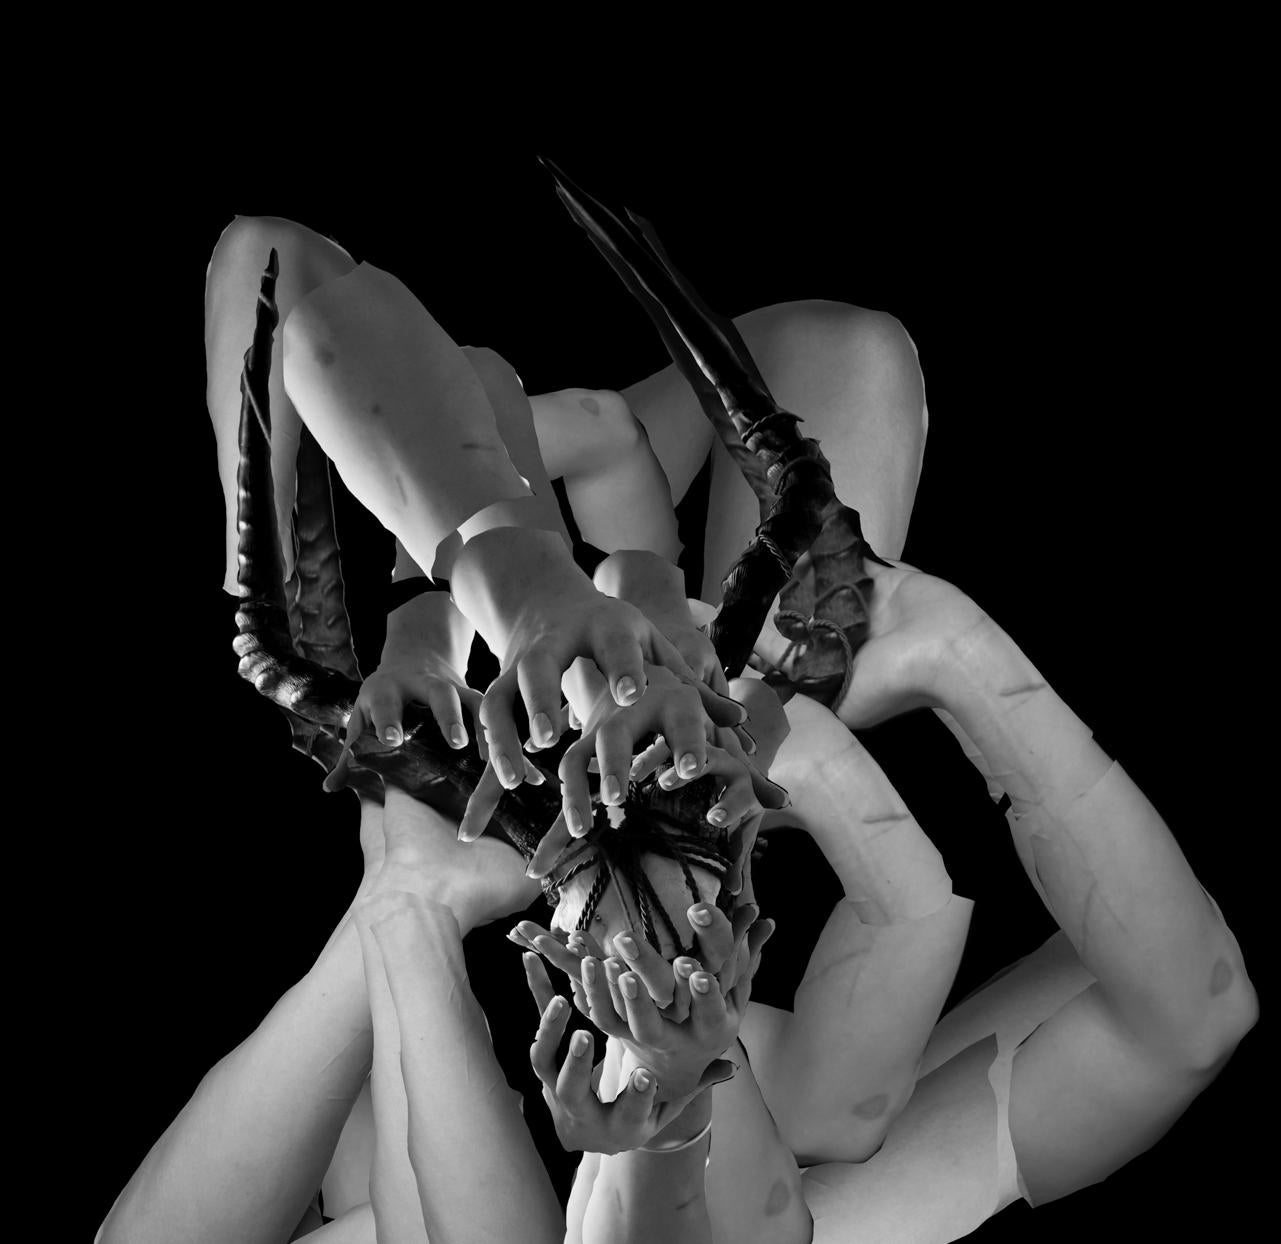 Untitled 3 & 5 Diptychon-Fotografien aus der Serie Fragmented, 2021 von Ying Chen
Archivalischer Pigmentdruck.
Gesamtgröße: 80 Zoll. H x 120 in. W. 
Individuelle Größe: 80 Zoll. H x 60 in. W. 
Auflage von 5 + 1AP
Ungerahmt

Der Titel dieser Serie